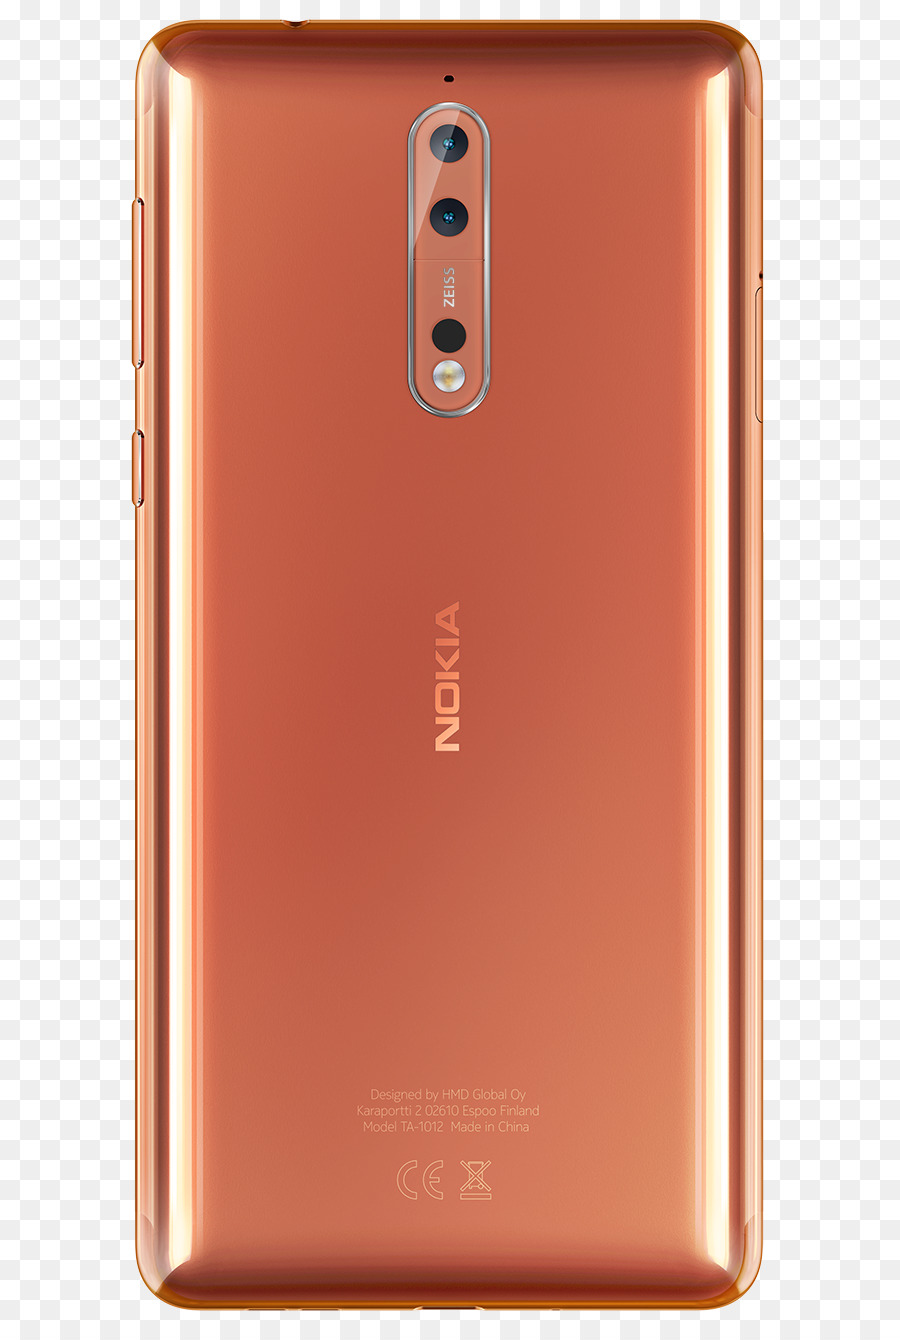 Nokia 諾基亞 đánh bóng đồng Minh điện Thoại - điện thoại thông minh